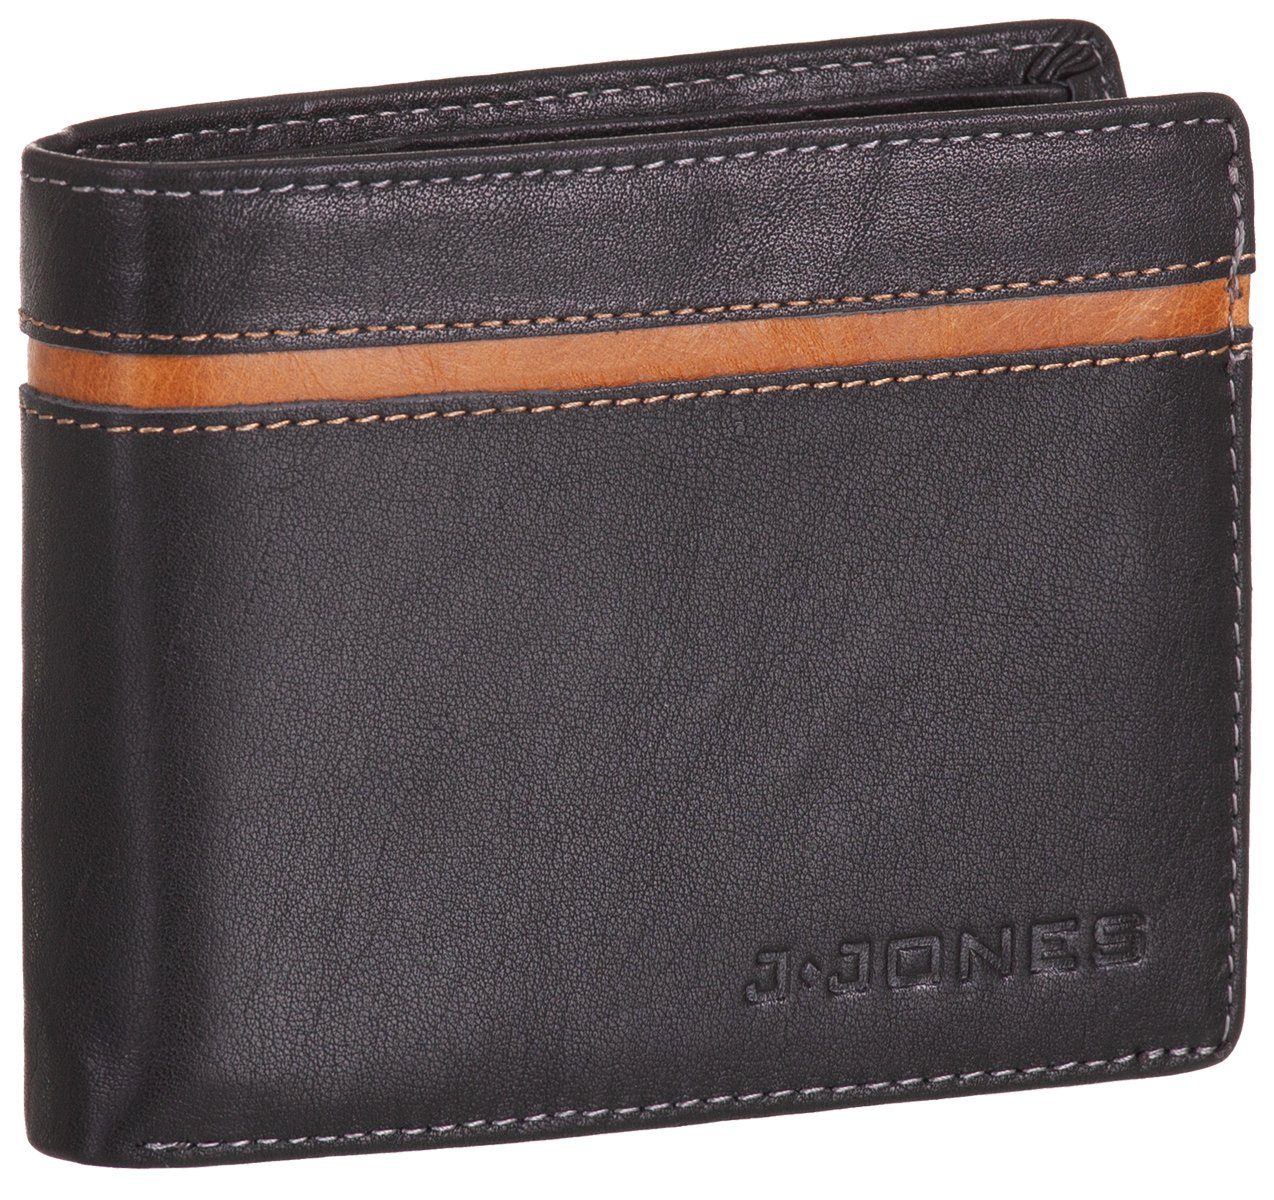 J.Jones Geldbörse, Geldbörse faltbar Echt Leder RFID-Schutz mit Münzfach Portemonnaie Geldbeutel schwarz-braun